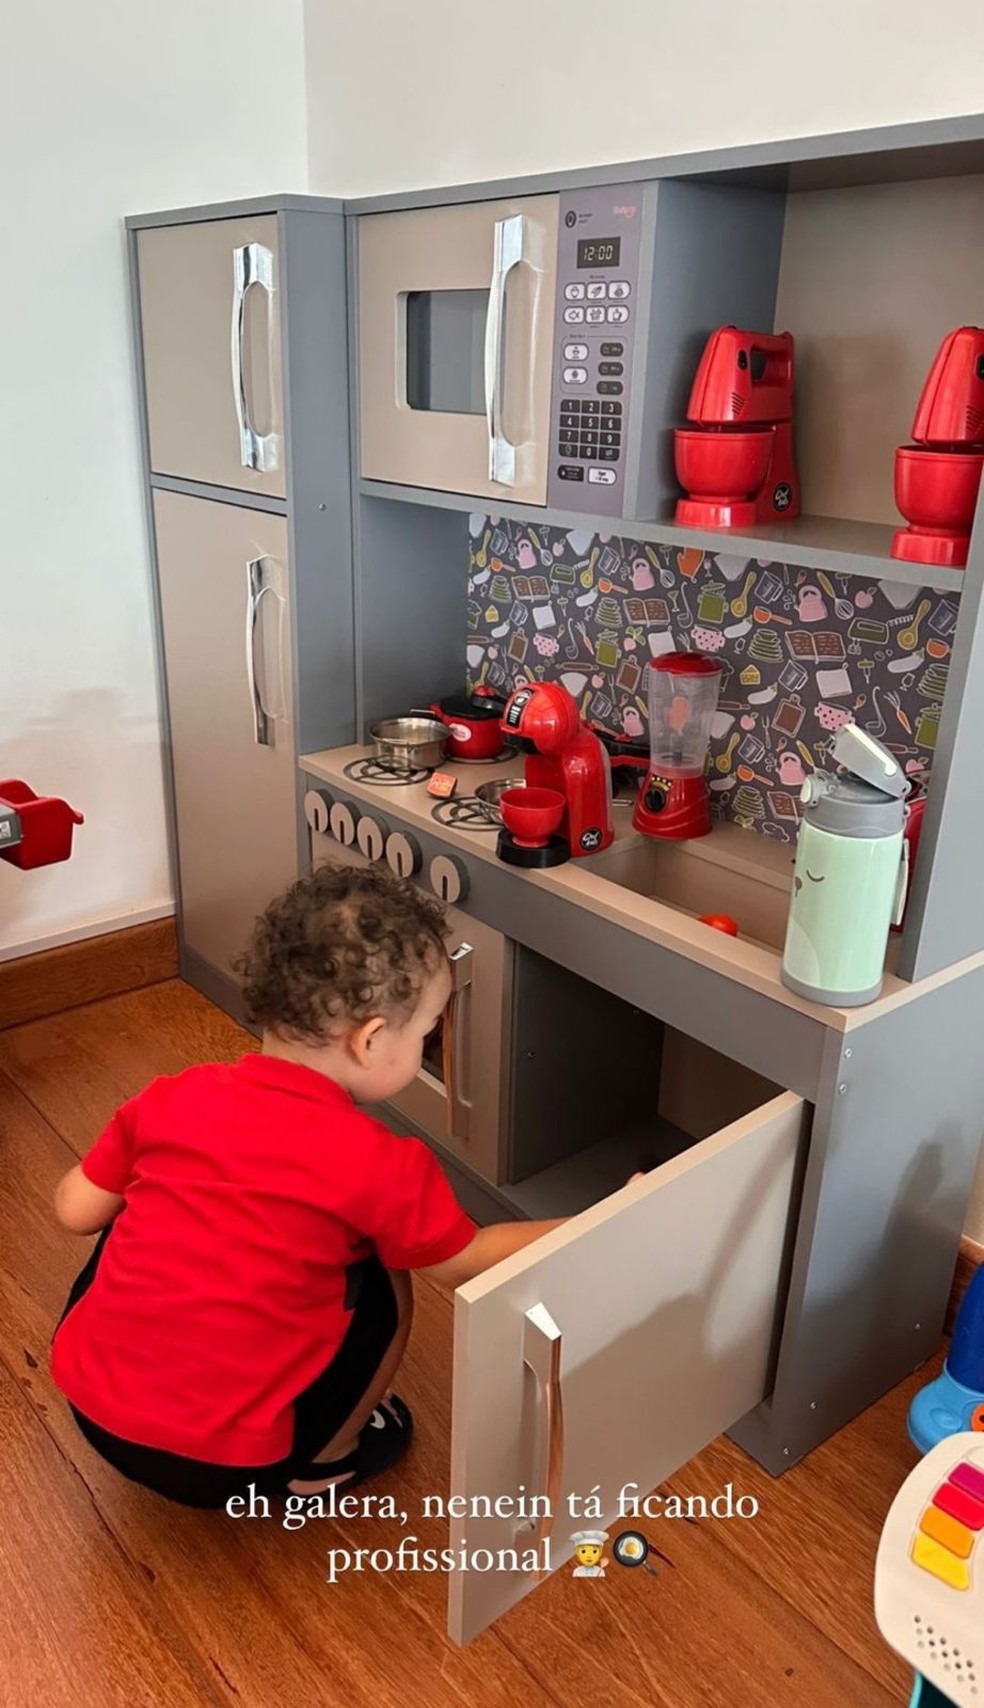 Cris, filho de Bianca Andrade com Fred, brincando em cozinha de brinquedo — Foto: Reprodução/Twitter